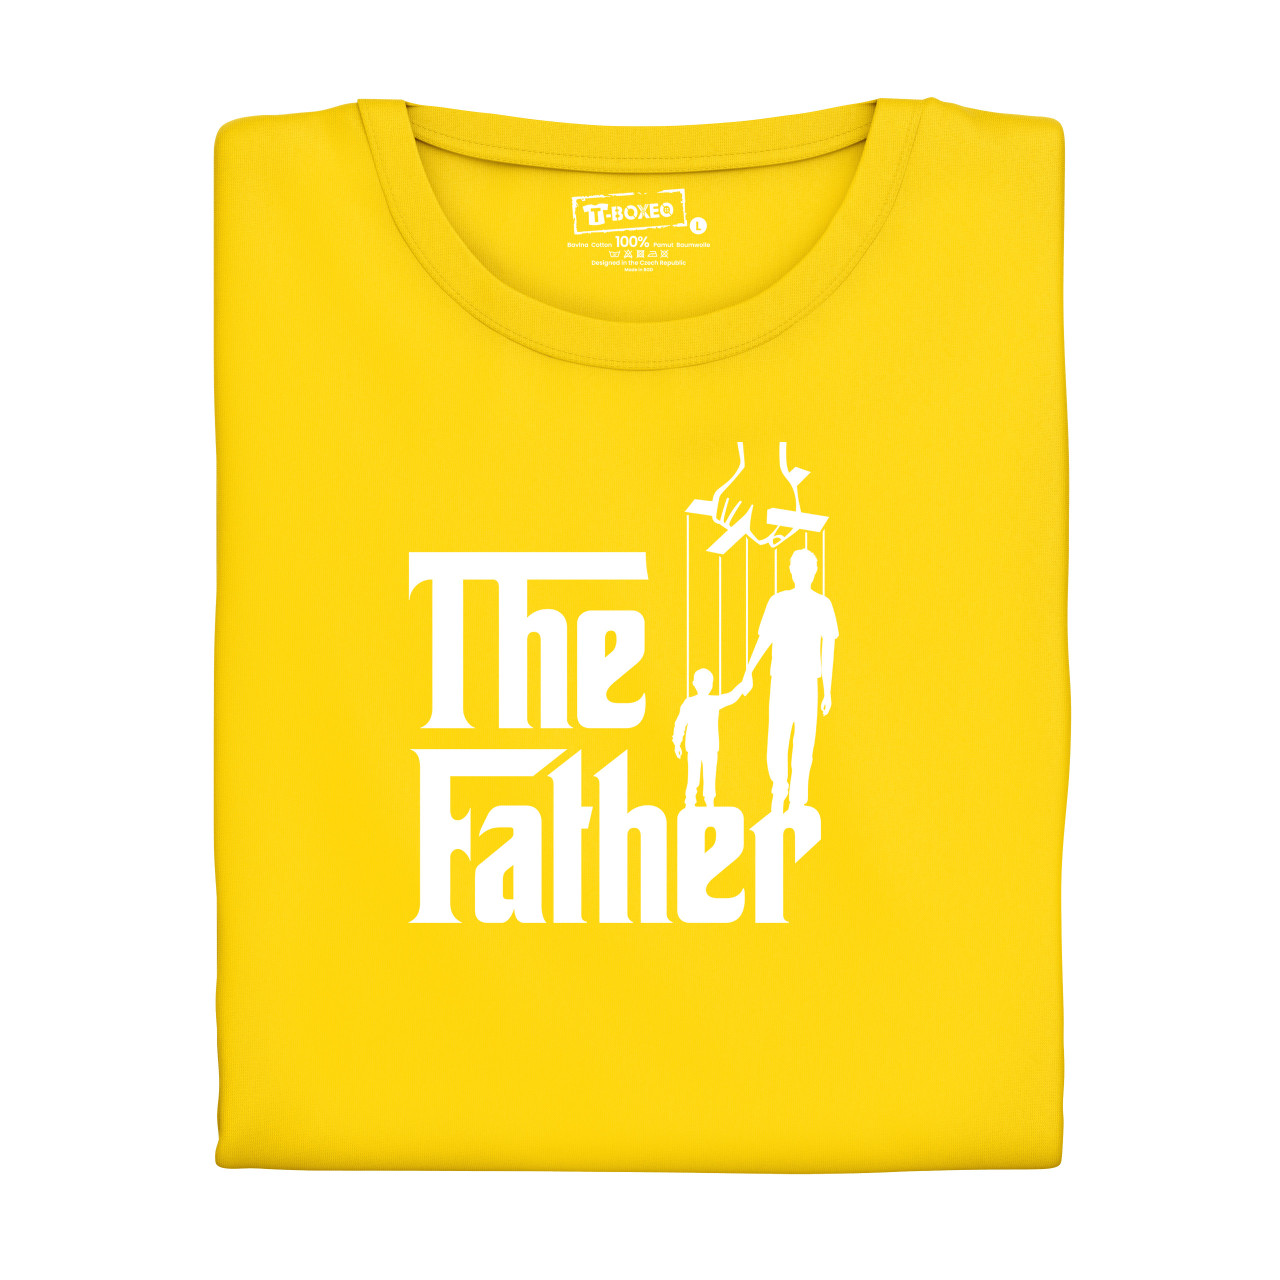 Pánské tričko s potiskem “The Father”